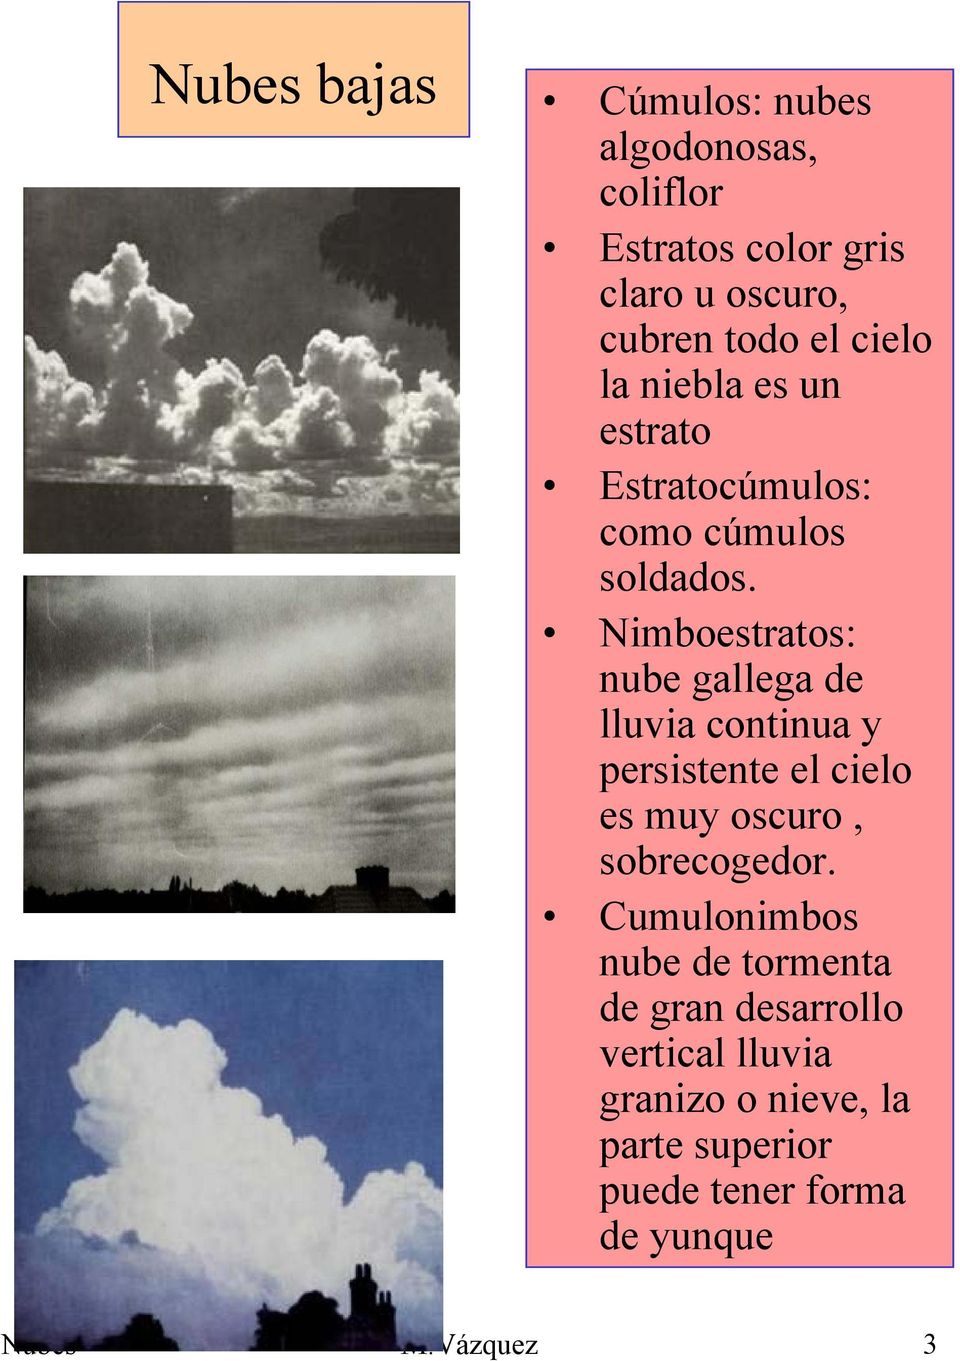 Nimboestratos: nube gallega de lluvia continua y persistente el cielo es muy oscuro, sobrecogedor.